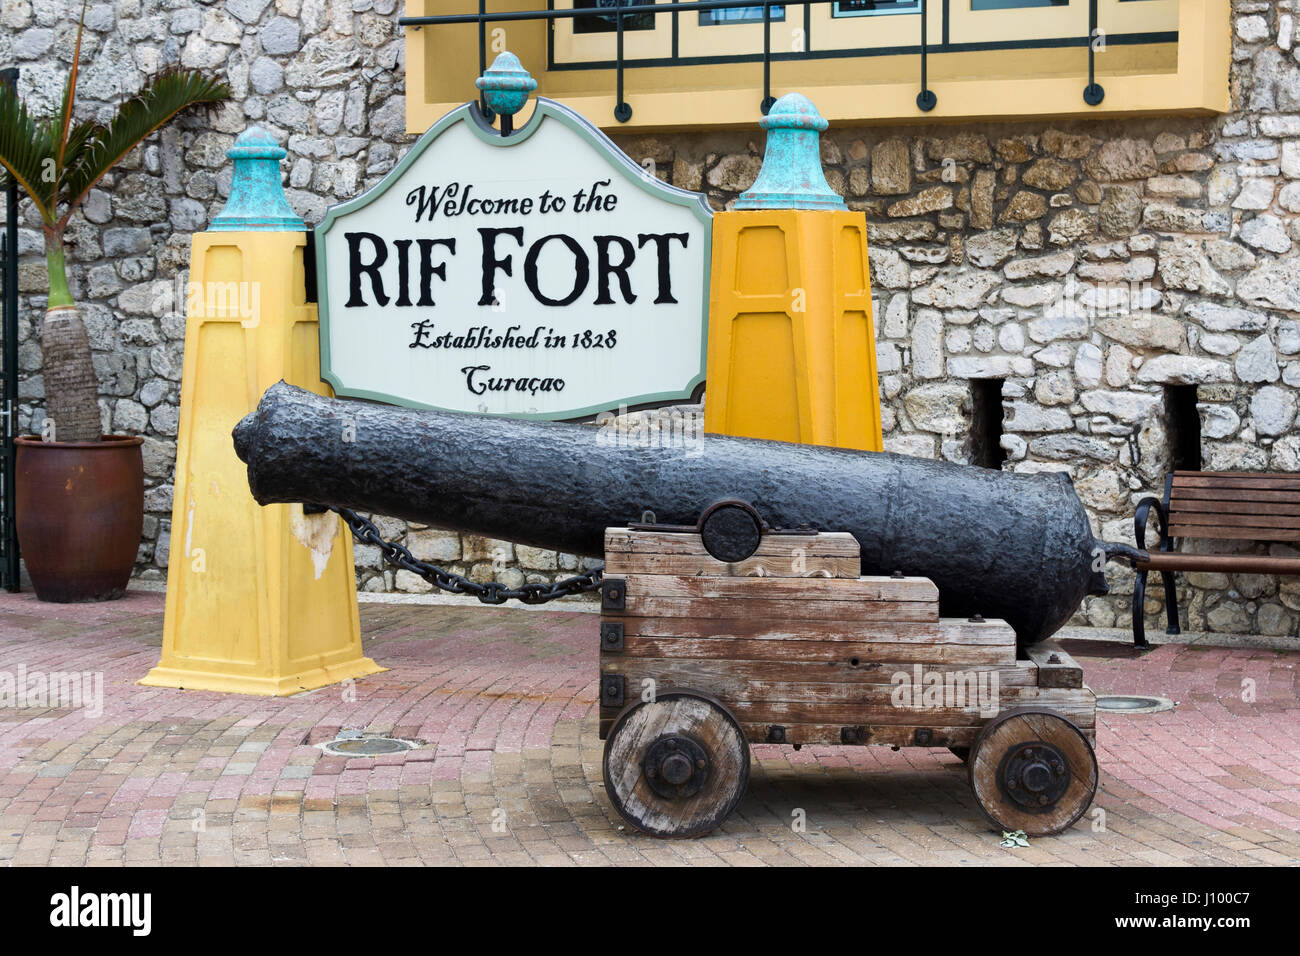 Williamsted, Curacao - 27 novembre 2015 : Un canon se trouve en face de l'entrée du Fort RIF. Banque D'Images